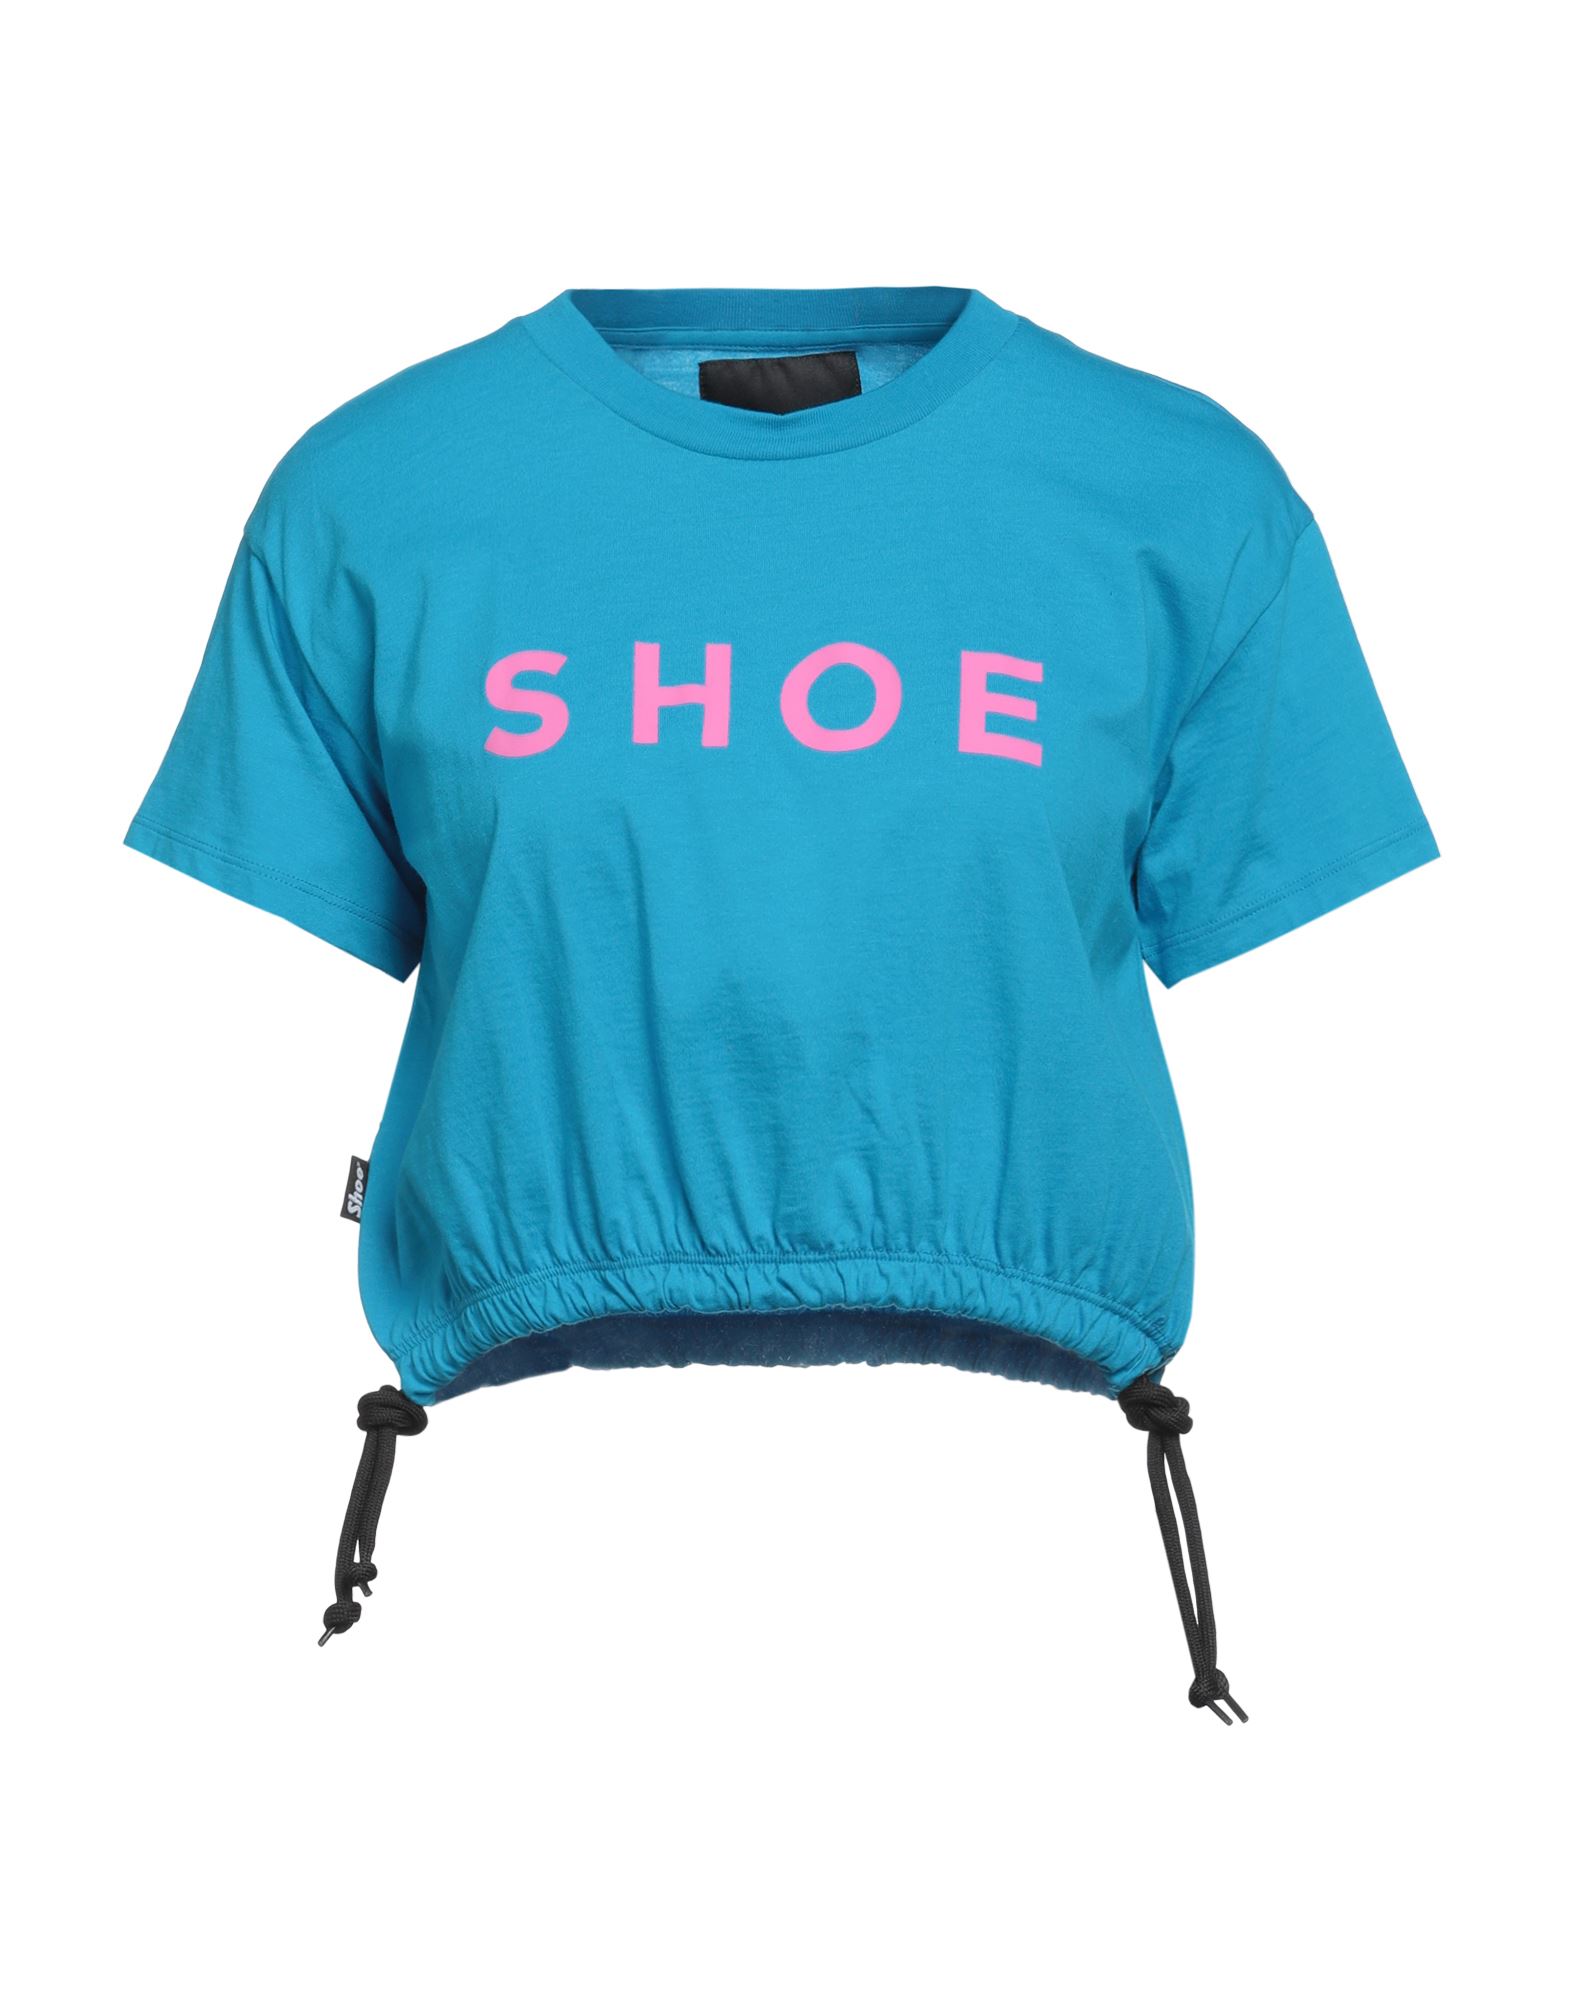 Shoe® Shoe Woman T-shirt Azure Size Xs Cotton In Blue